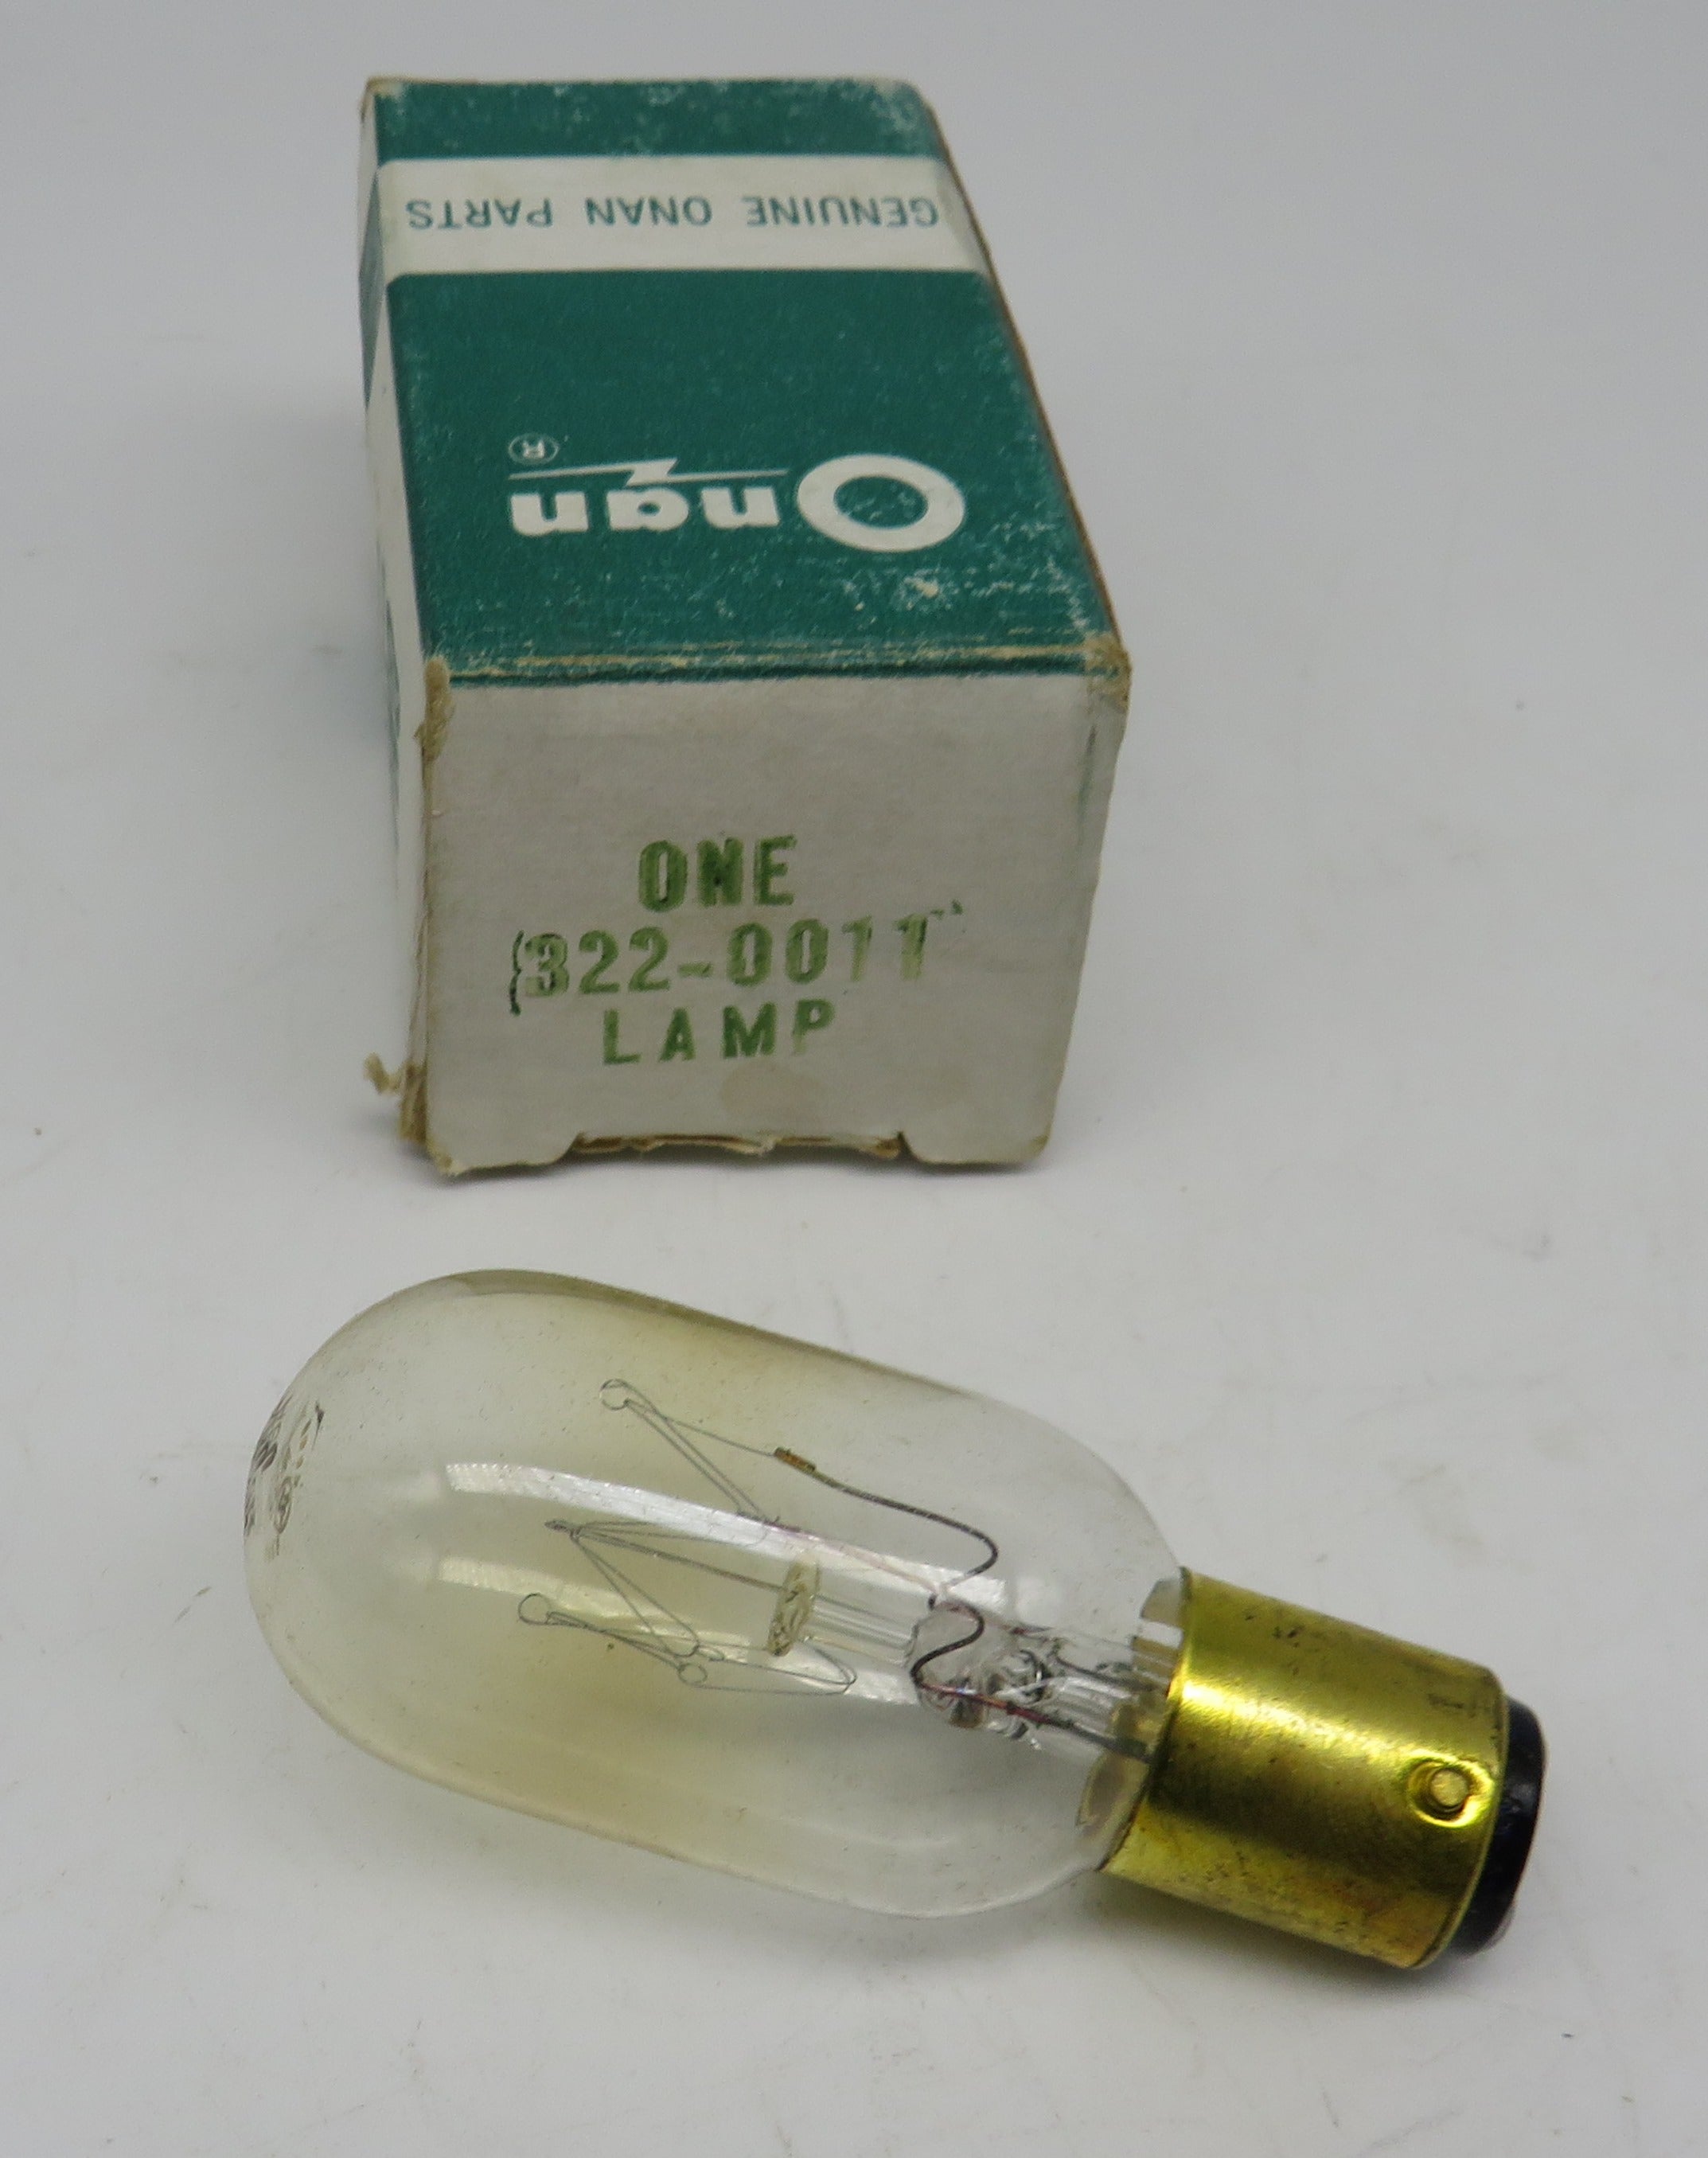 322-0011 Onan Lamp / Bulb 25 Watt 125 Volt Push Button 